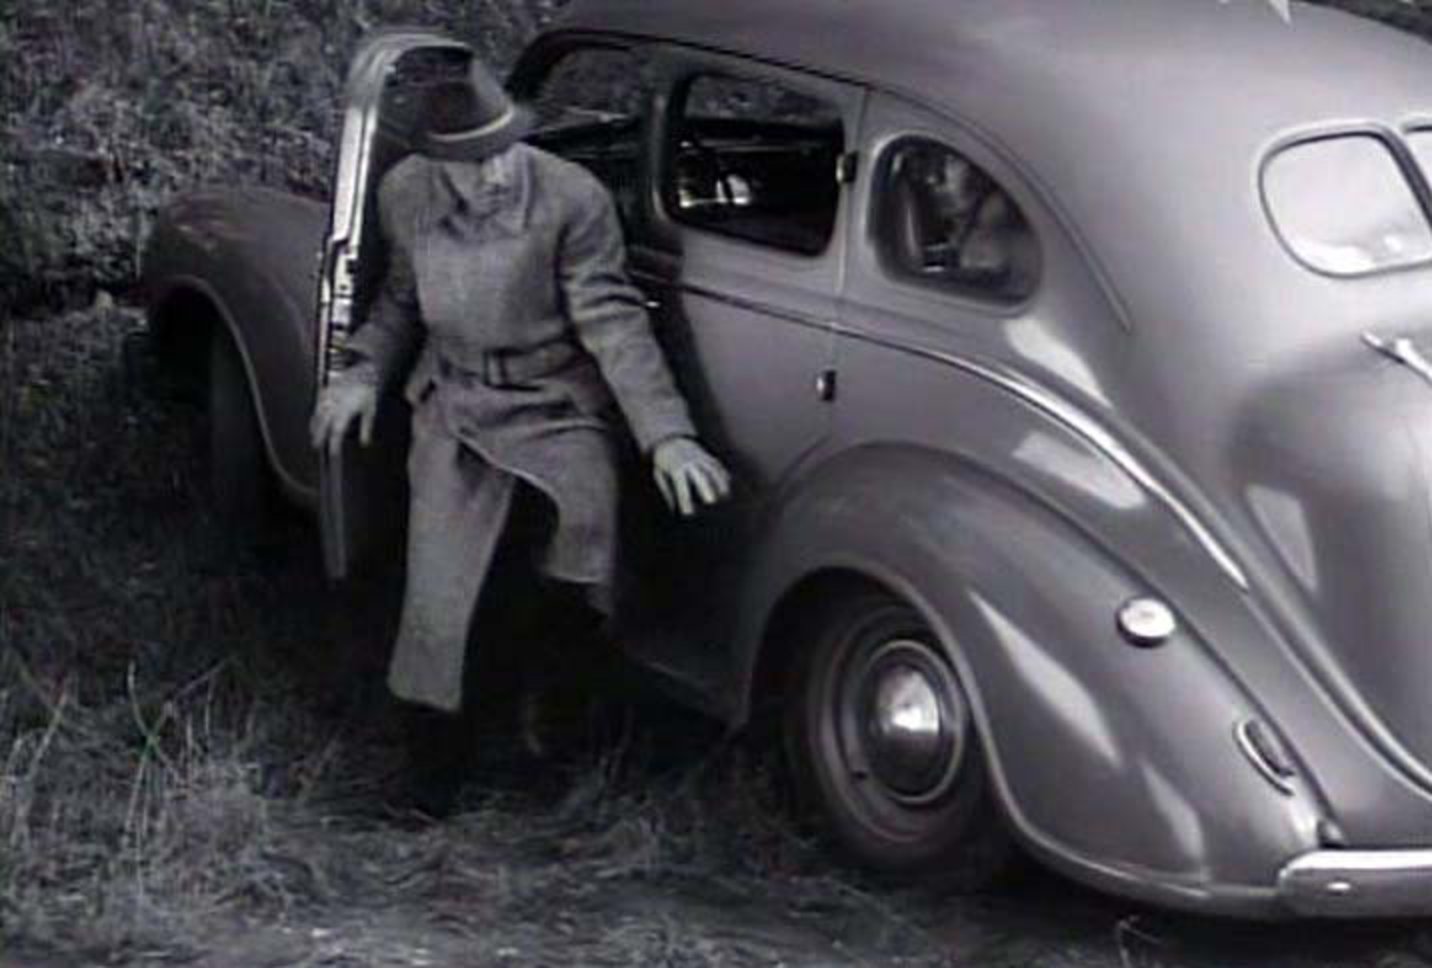 IMCDb.org: 1939 Dodge Royal Touring Sedan [DP-8] in "Beredskapspojkar, 1941"